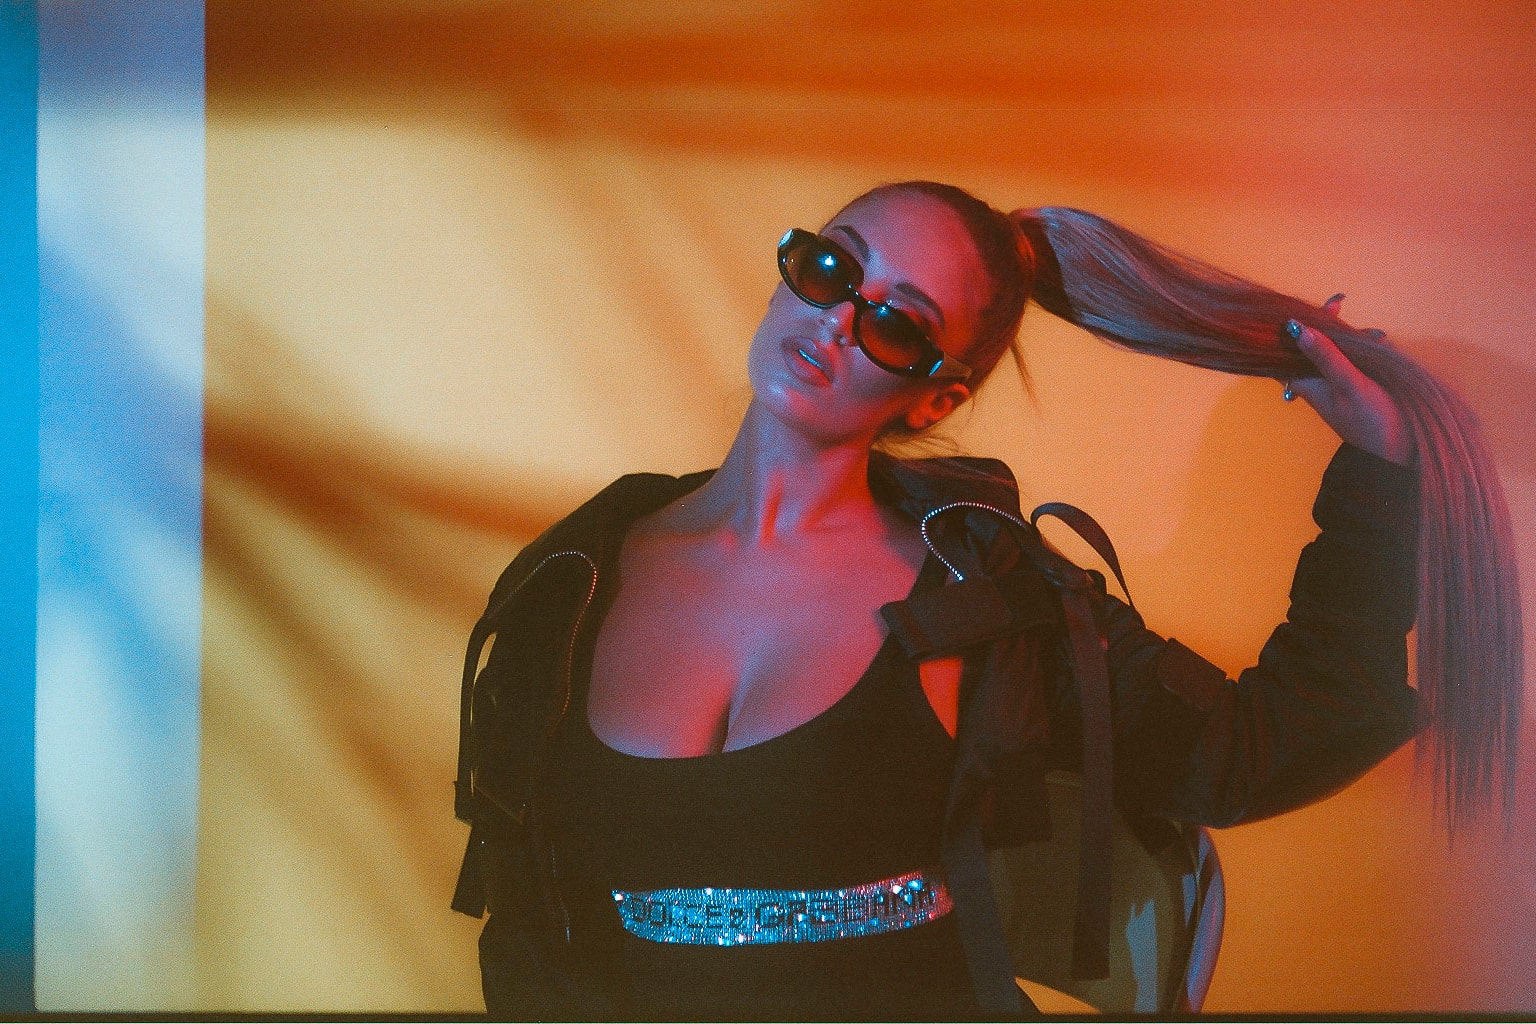 Alina Baraz Singer Ponytail Sunglasses Leather Jacket